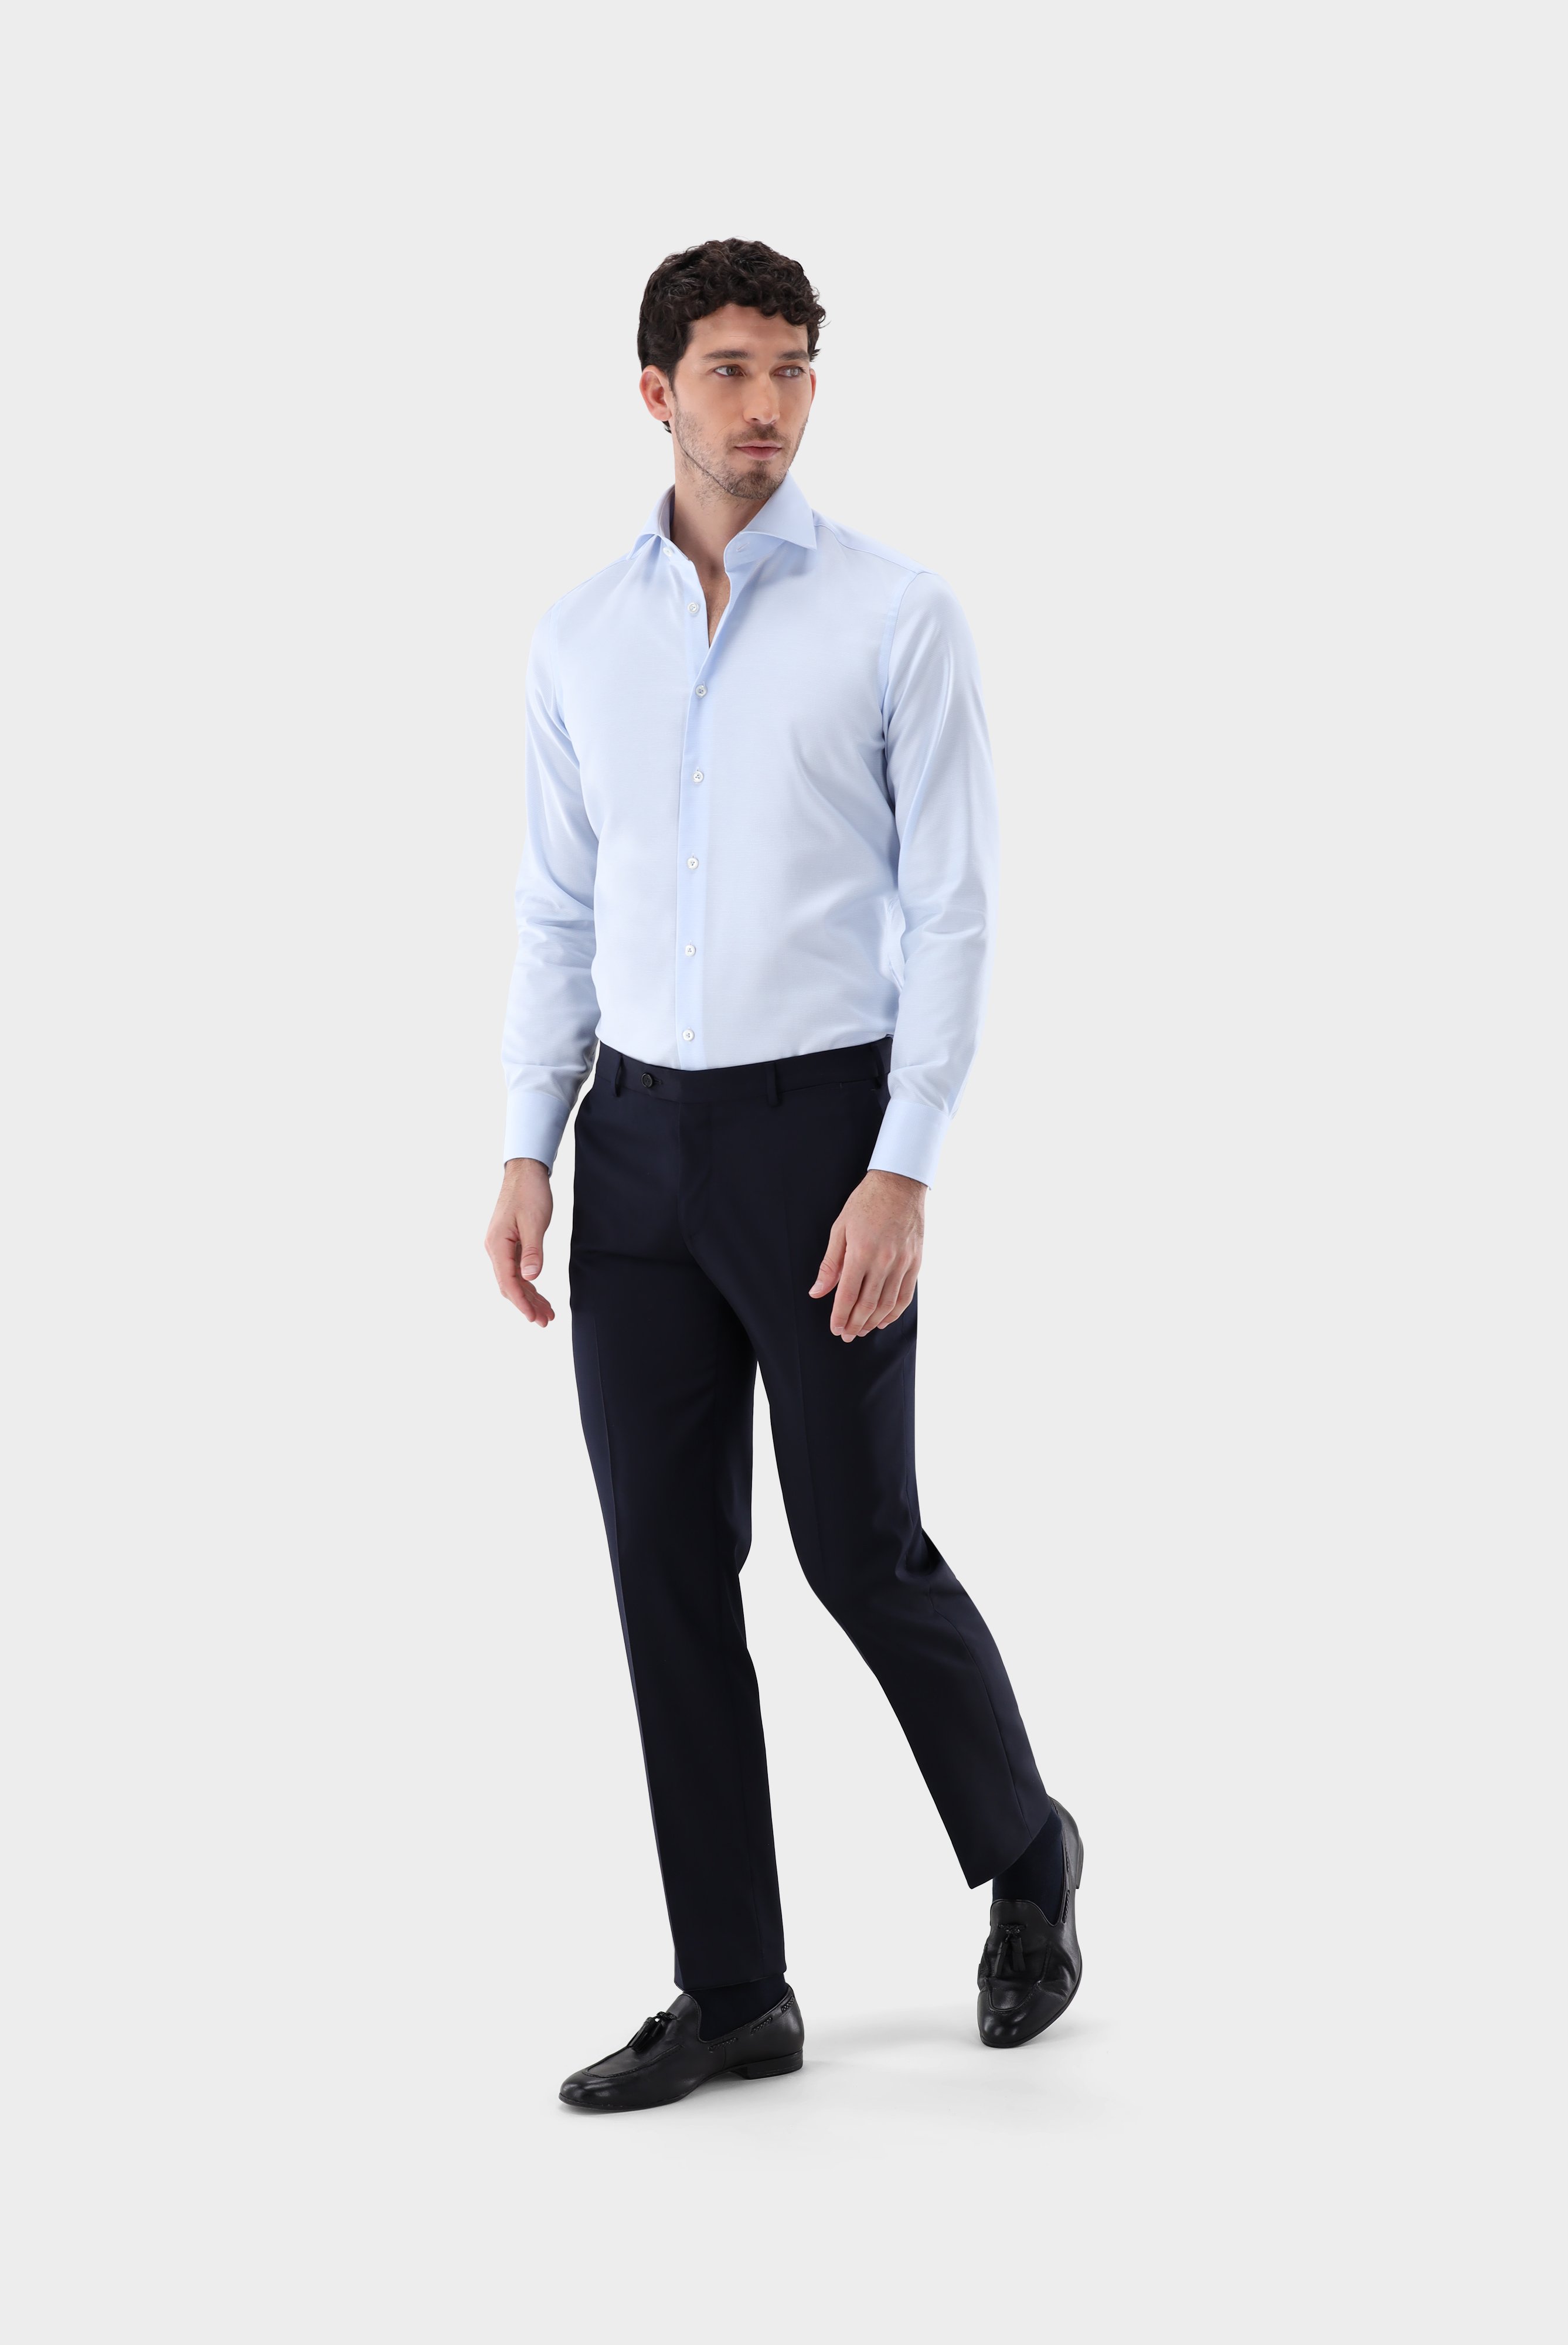 Business Hemden+Twill Hemd mit Struktur Tailor Fit+20.2020.AV.161265.710.38